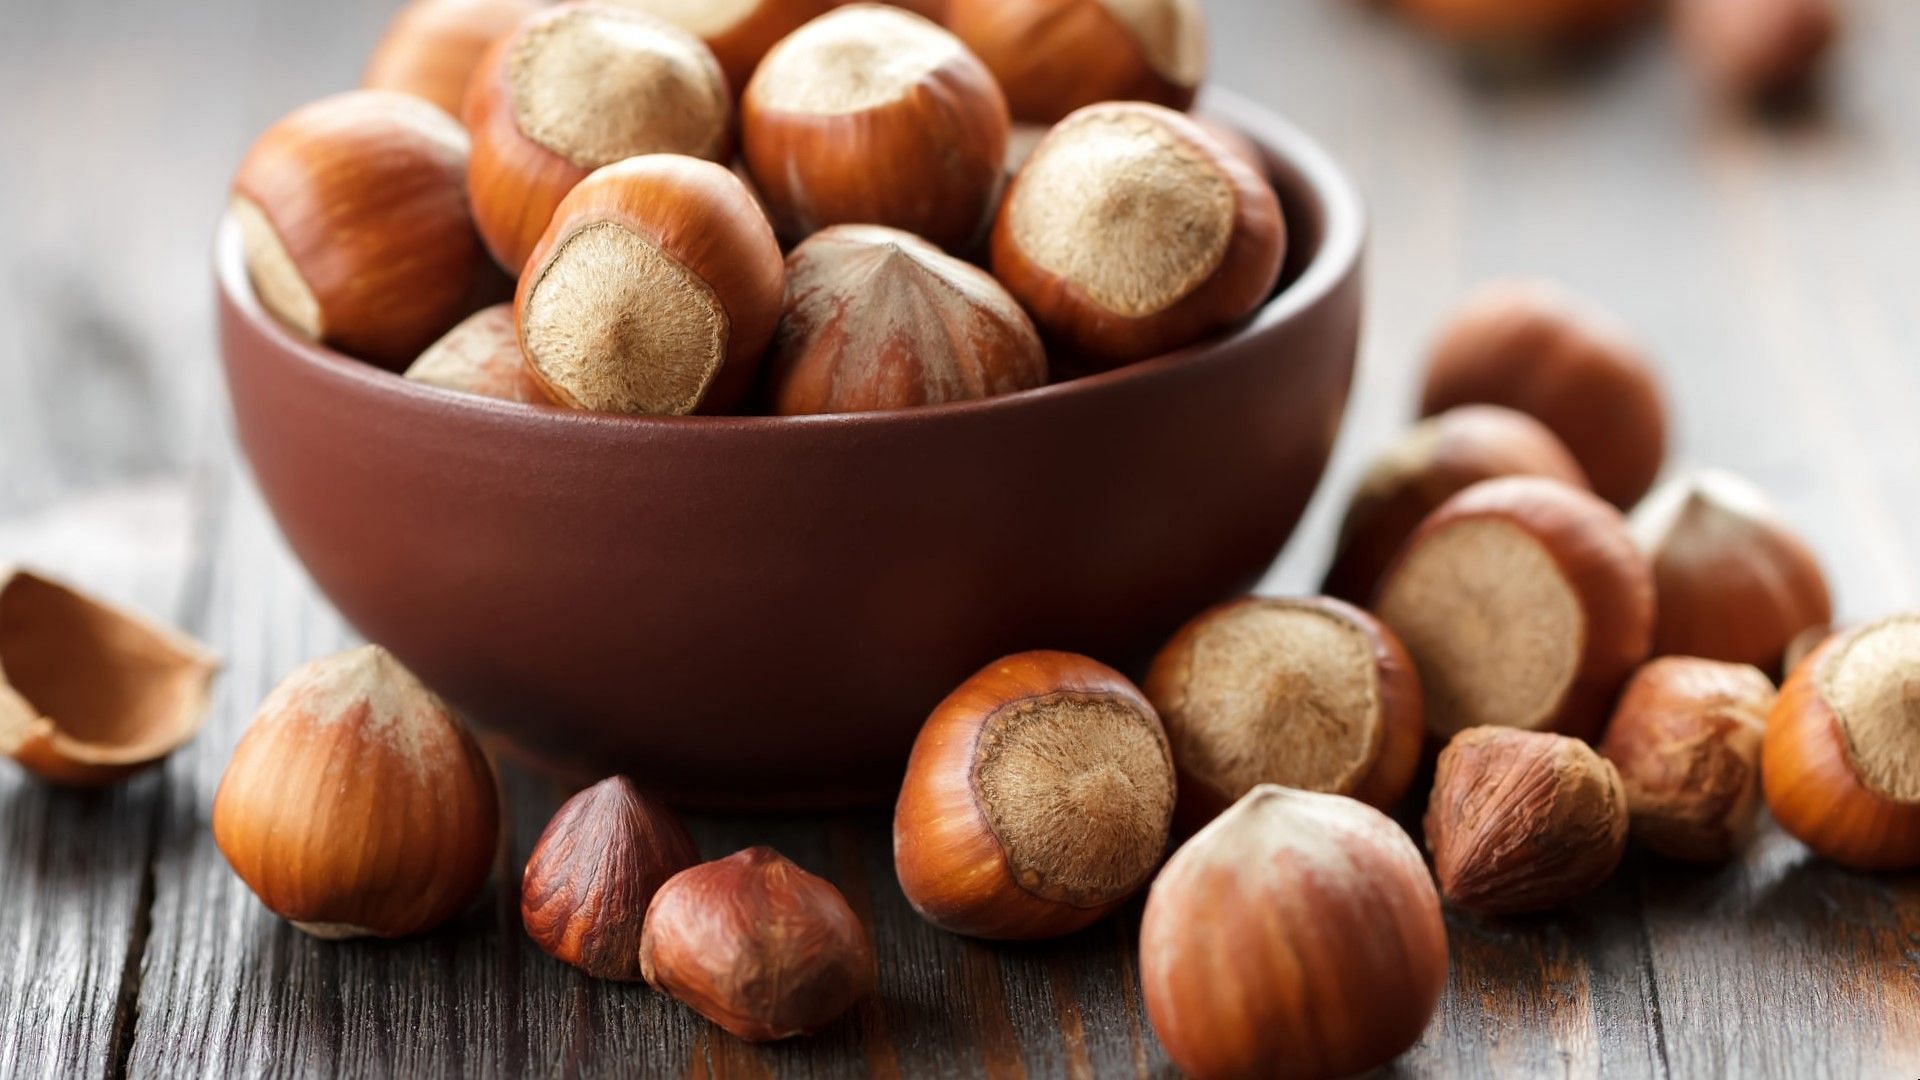 Hazelnuts are versatile, and taste great! (Image via unsplash)